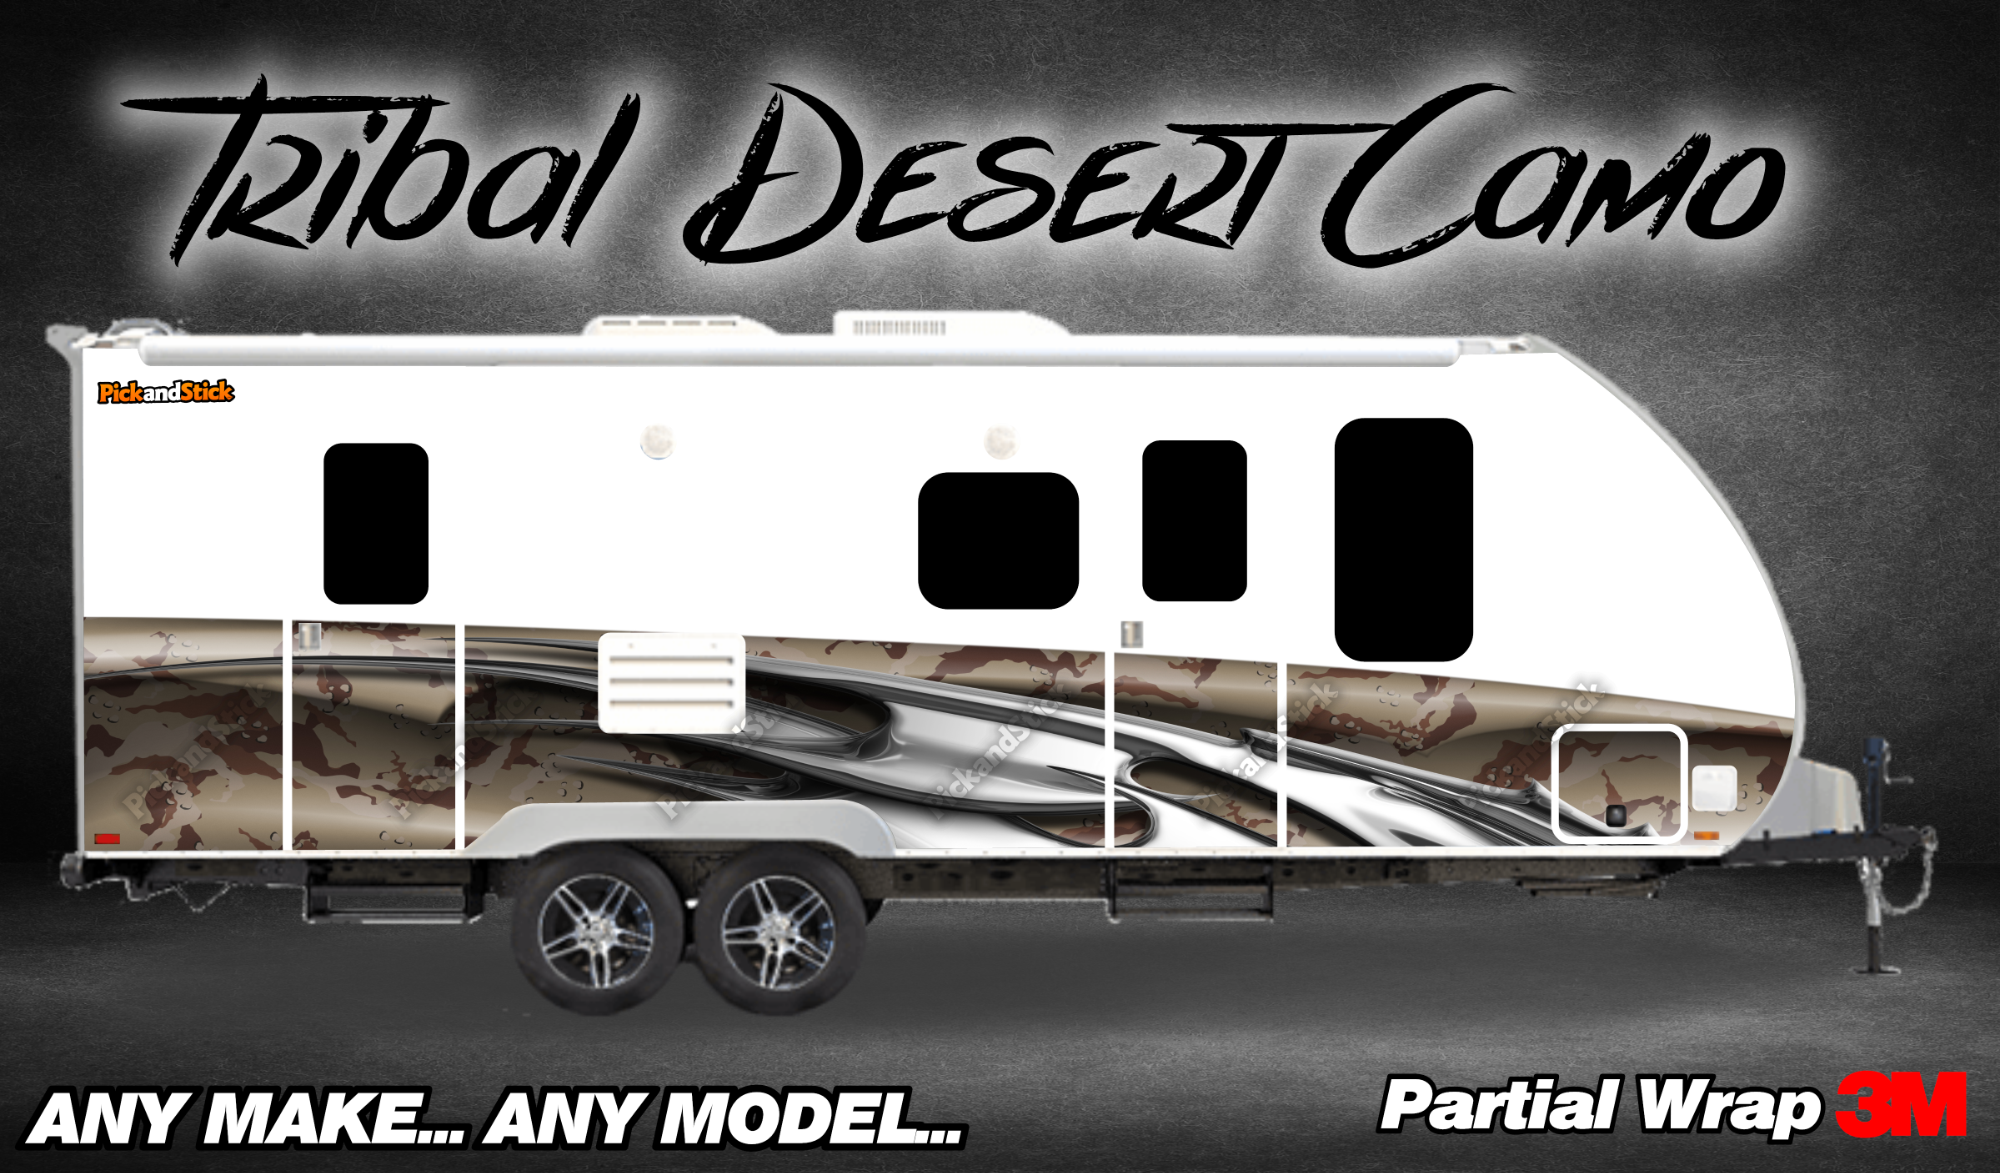 Tribal Desert Camo RV Partial Wrap - PickandStickcom